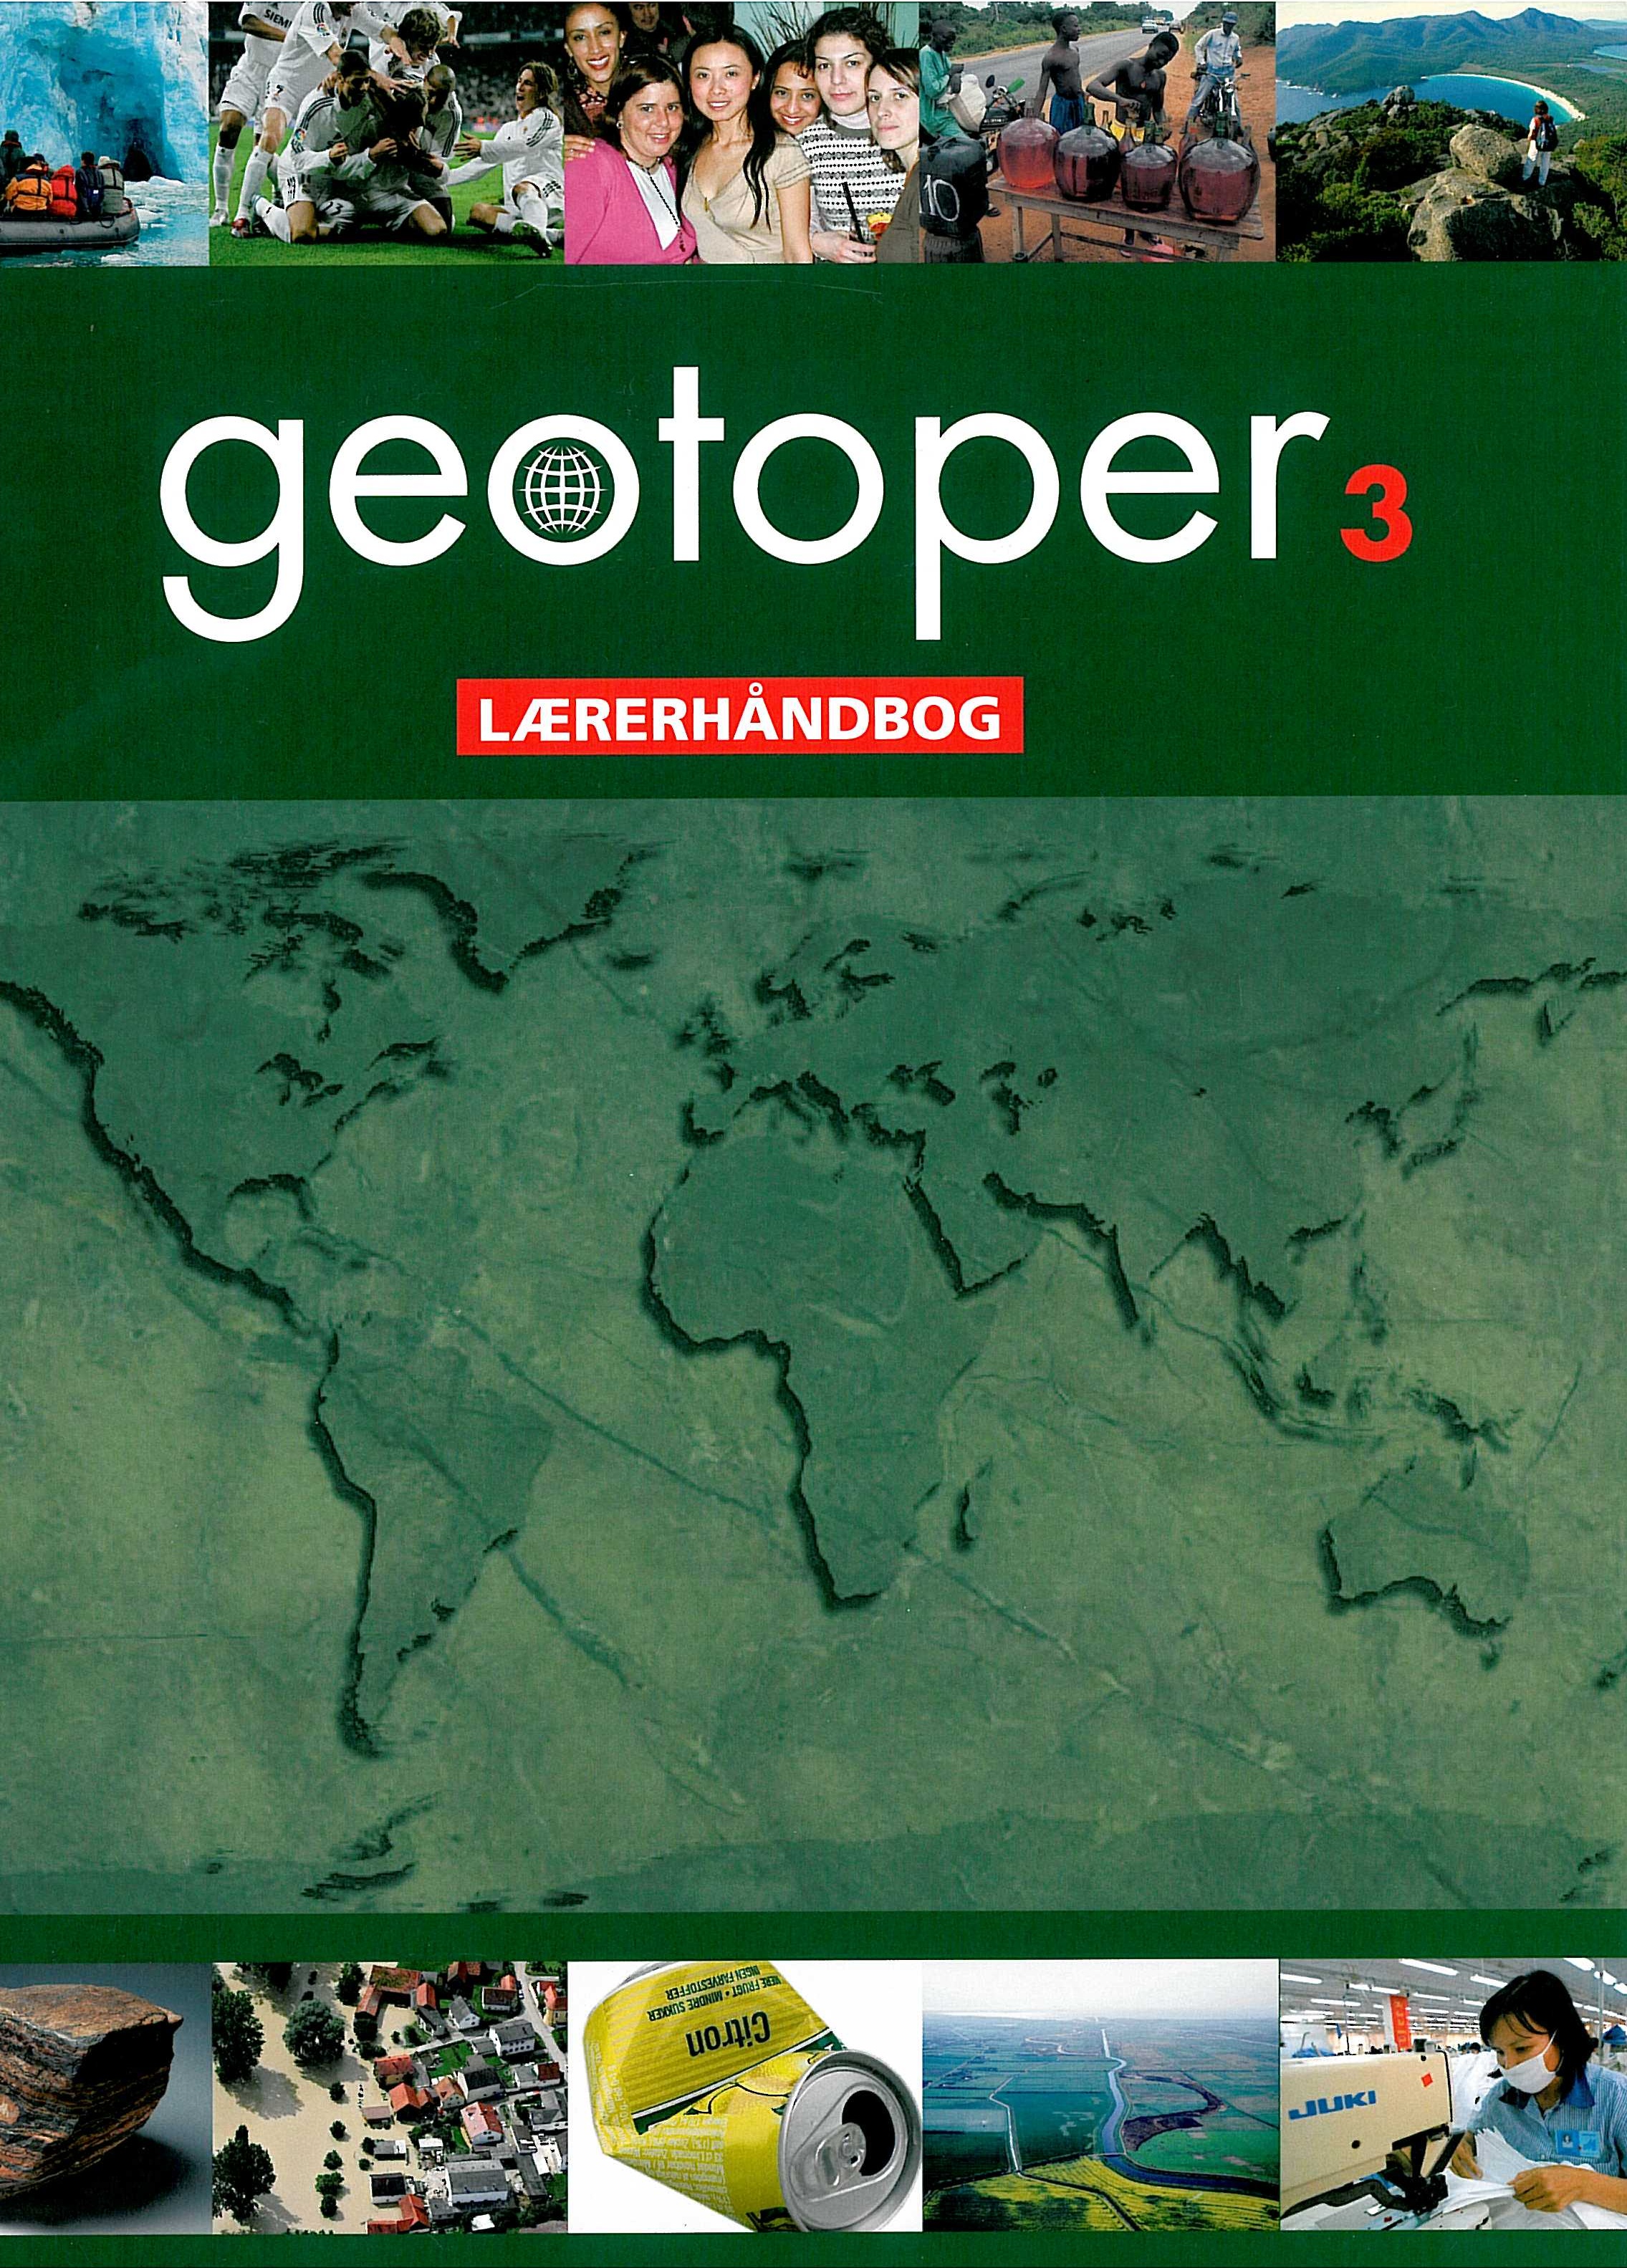 Geotoper 3 Lærerhåndbog er en del af et undervisningssystem til grundskolens undervisning i geografi i 7. til 9. klasse.